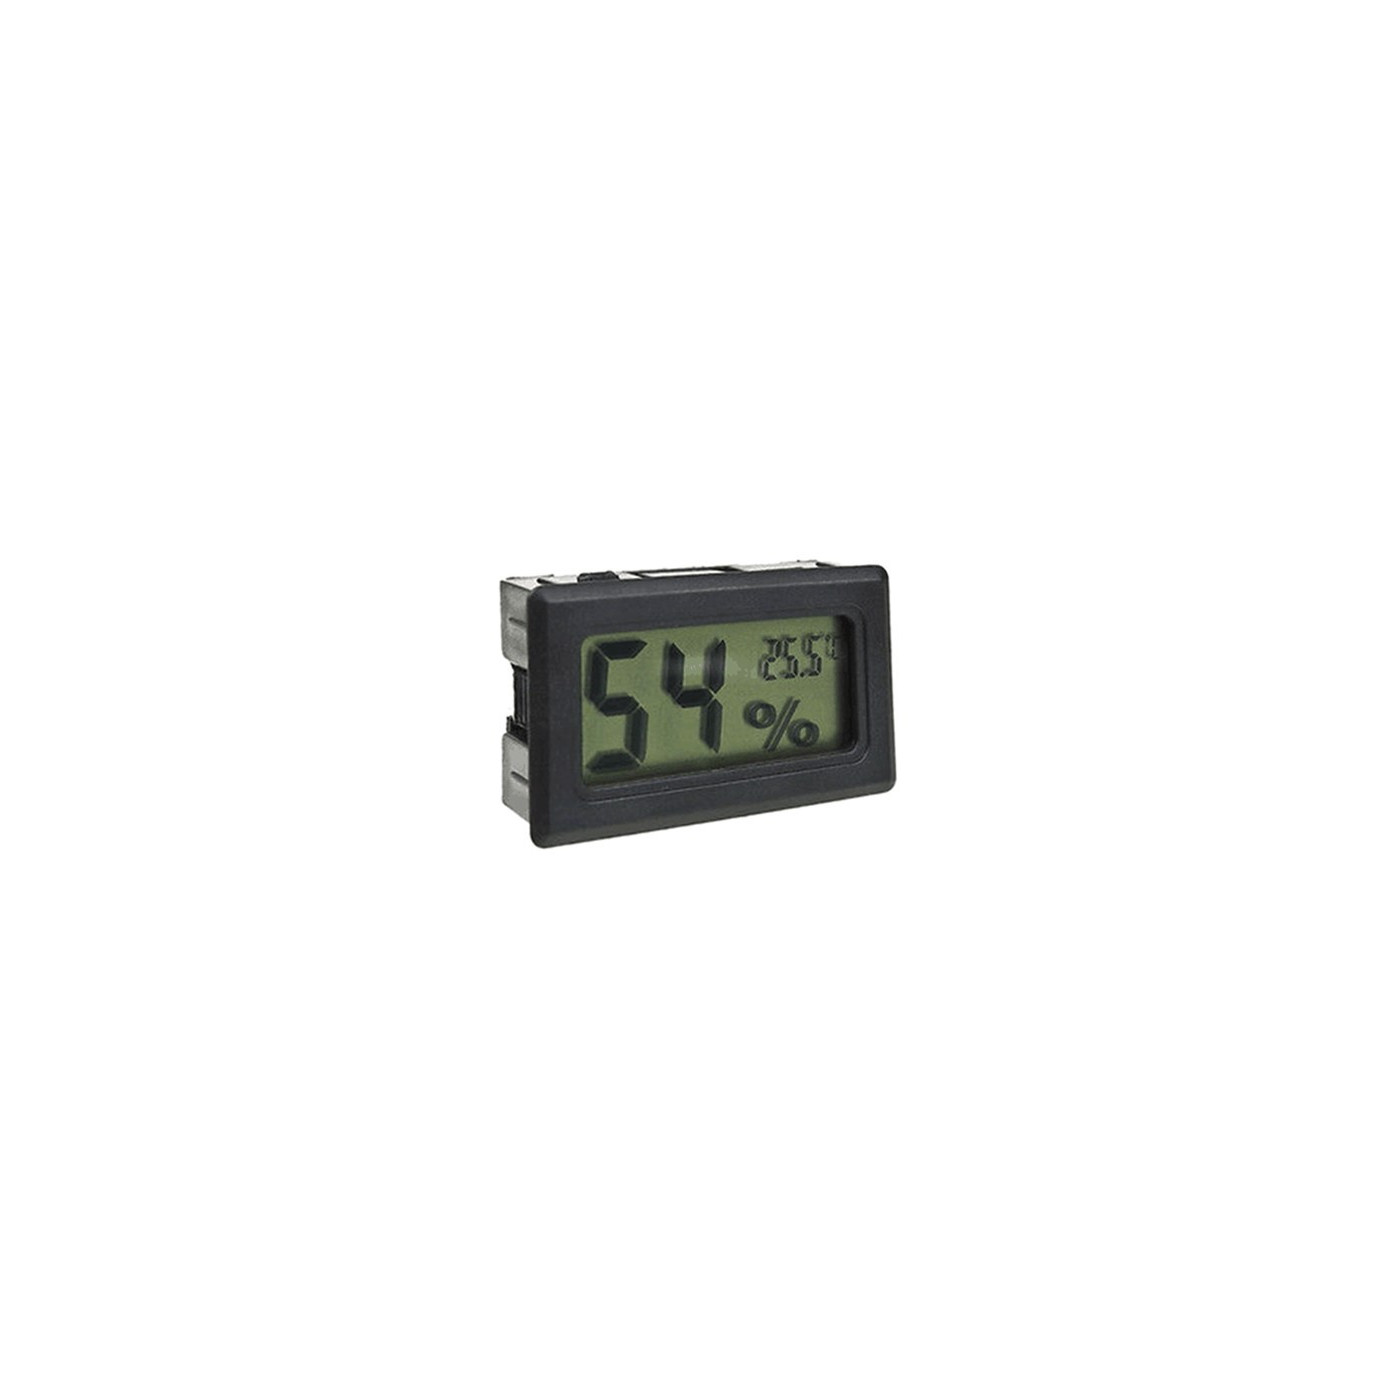 LCD indendørs temperatur- og luftfugtighedsmåler (sort)